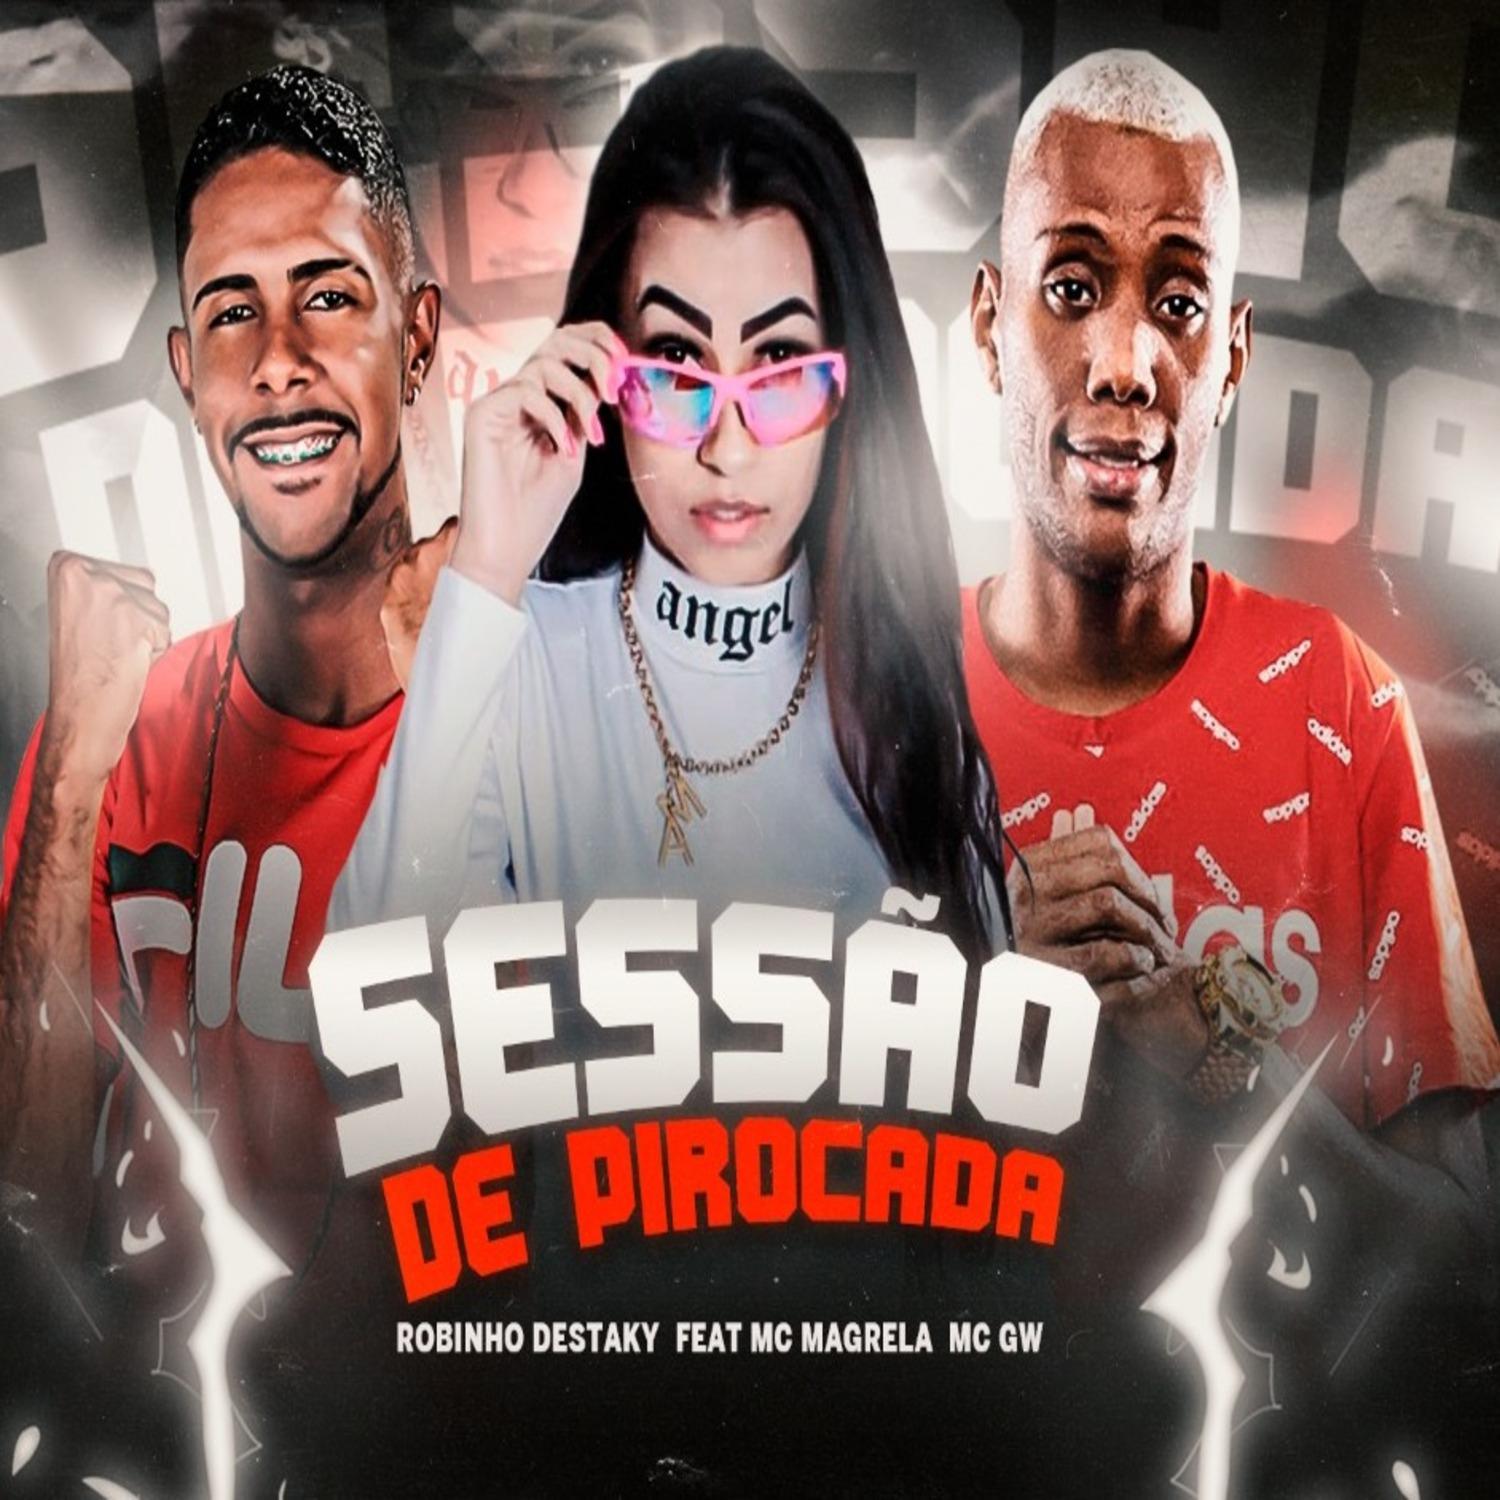 Robinho Destaky - Sessão de Pirocada (feat. Mc Gw & Mc Magrela) (Brega Funk)